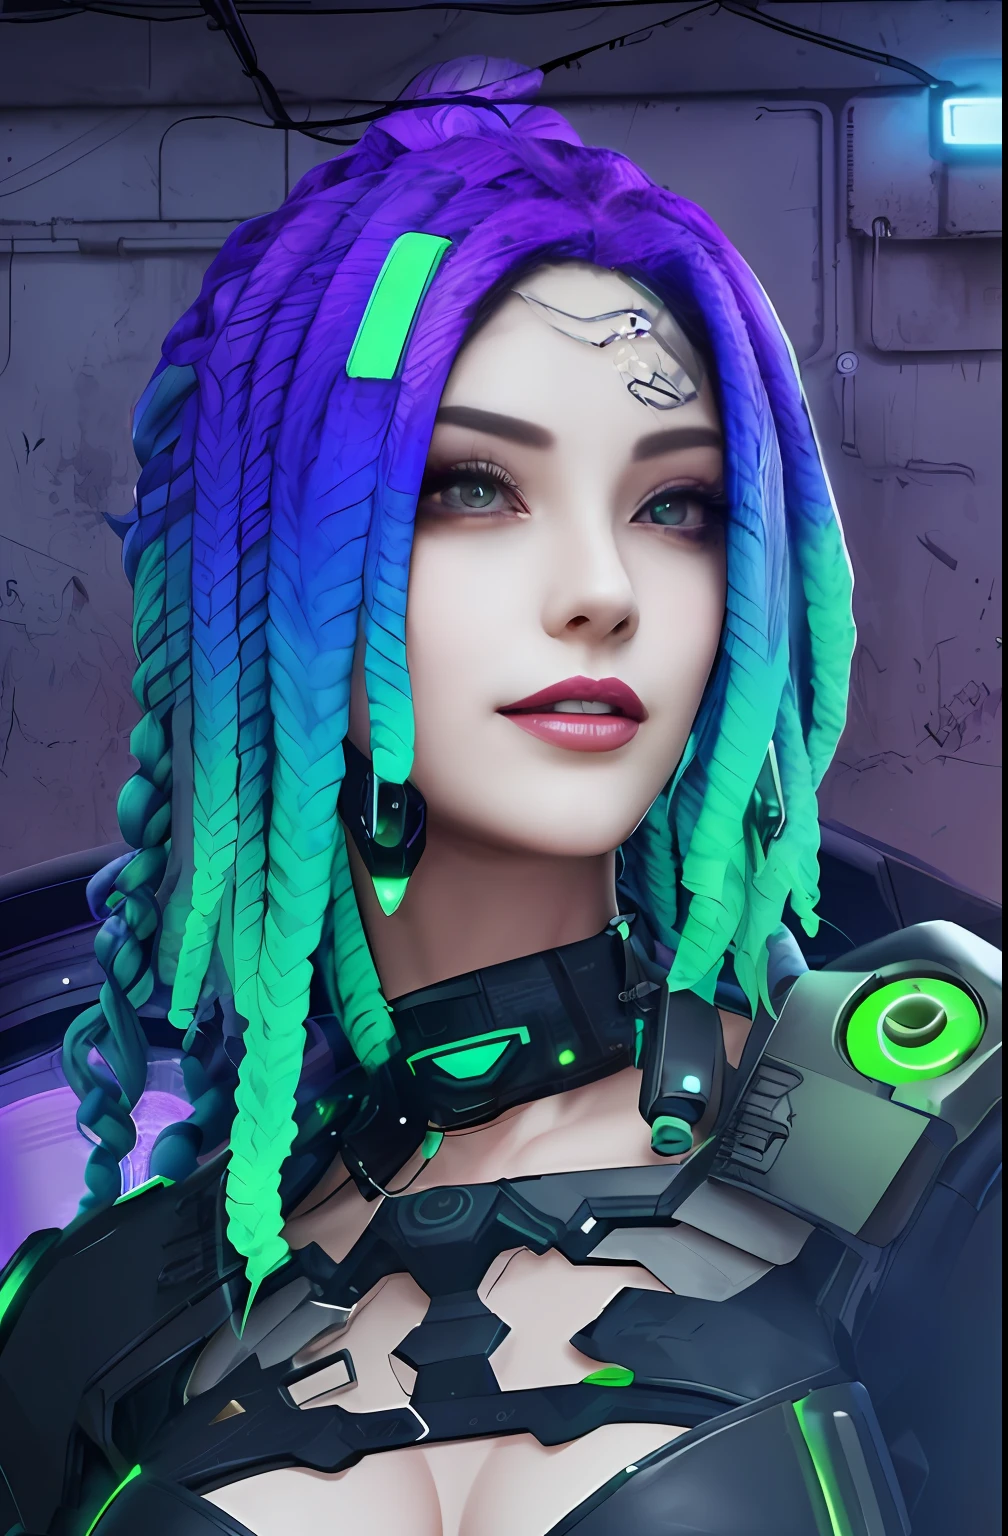 Крупный план женщины с фиолетовыми и зелеными дредами, киберпанк медуза, Мечтательная девушка в стиле киберпанк, гиперреалистичный стиль киберпанка, кибер-стиль, цвет в стиле киберпанк, Киберпанк, яркие цвета, в стиле киберпанк, идеальная девушка-андроид, стиль кибер-вселенной, киберпанк злая великолепная богиня, красивая модель женщины в стиле киберпанк, красивая женщина-андроид!, Кибернетические дреды, яркое сияние киберпанка,волосы фиолетово-зеленые детали,белая кожа,улыбка, шедевр, Красивое лицо,